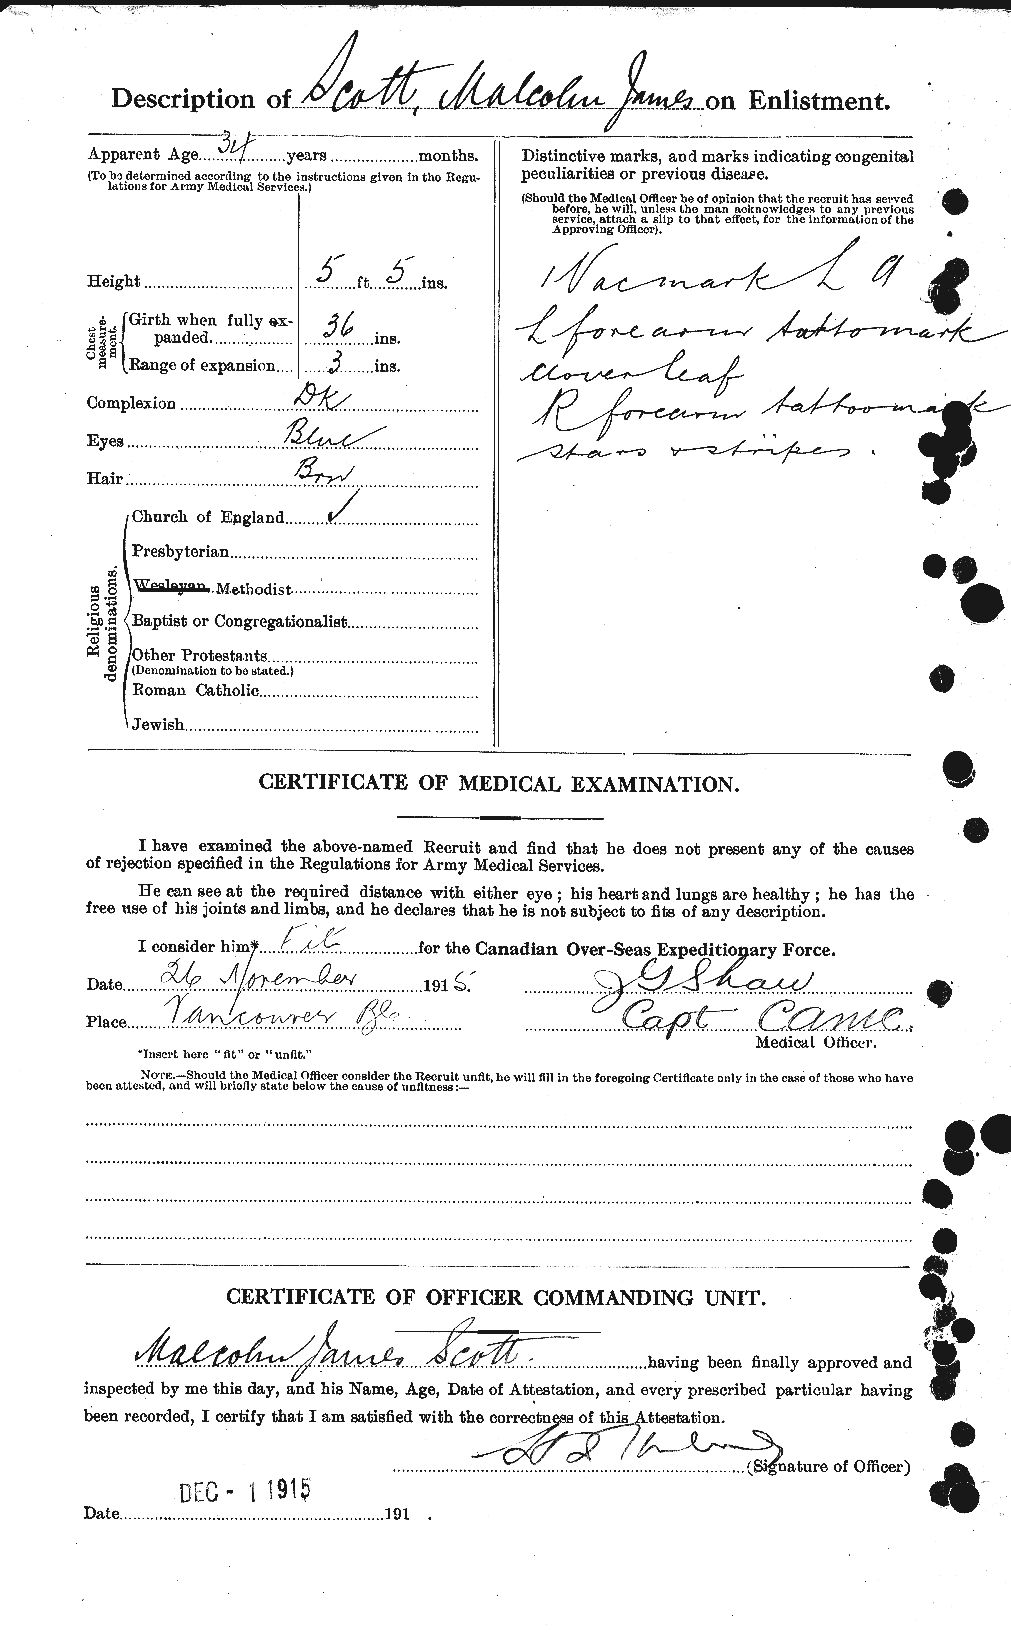 Dossiers du Personnel de la Première Guerre mondiale - CEC 083517b